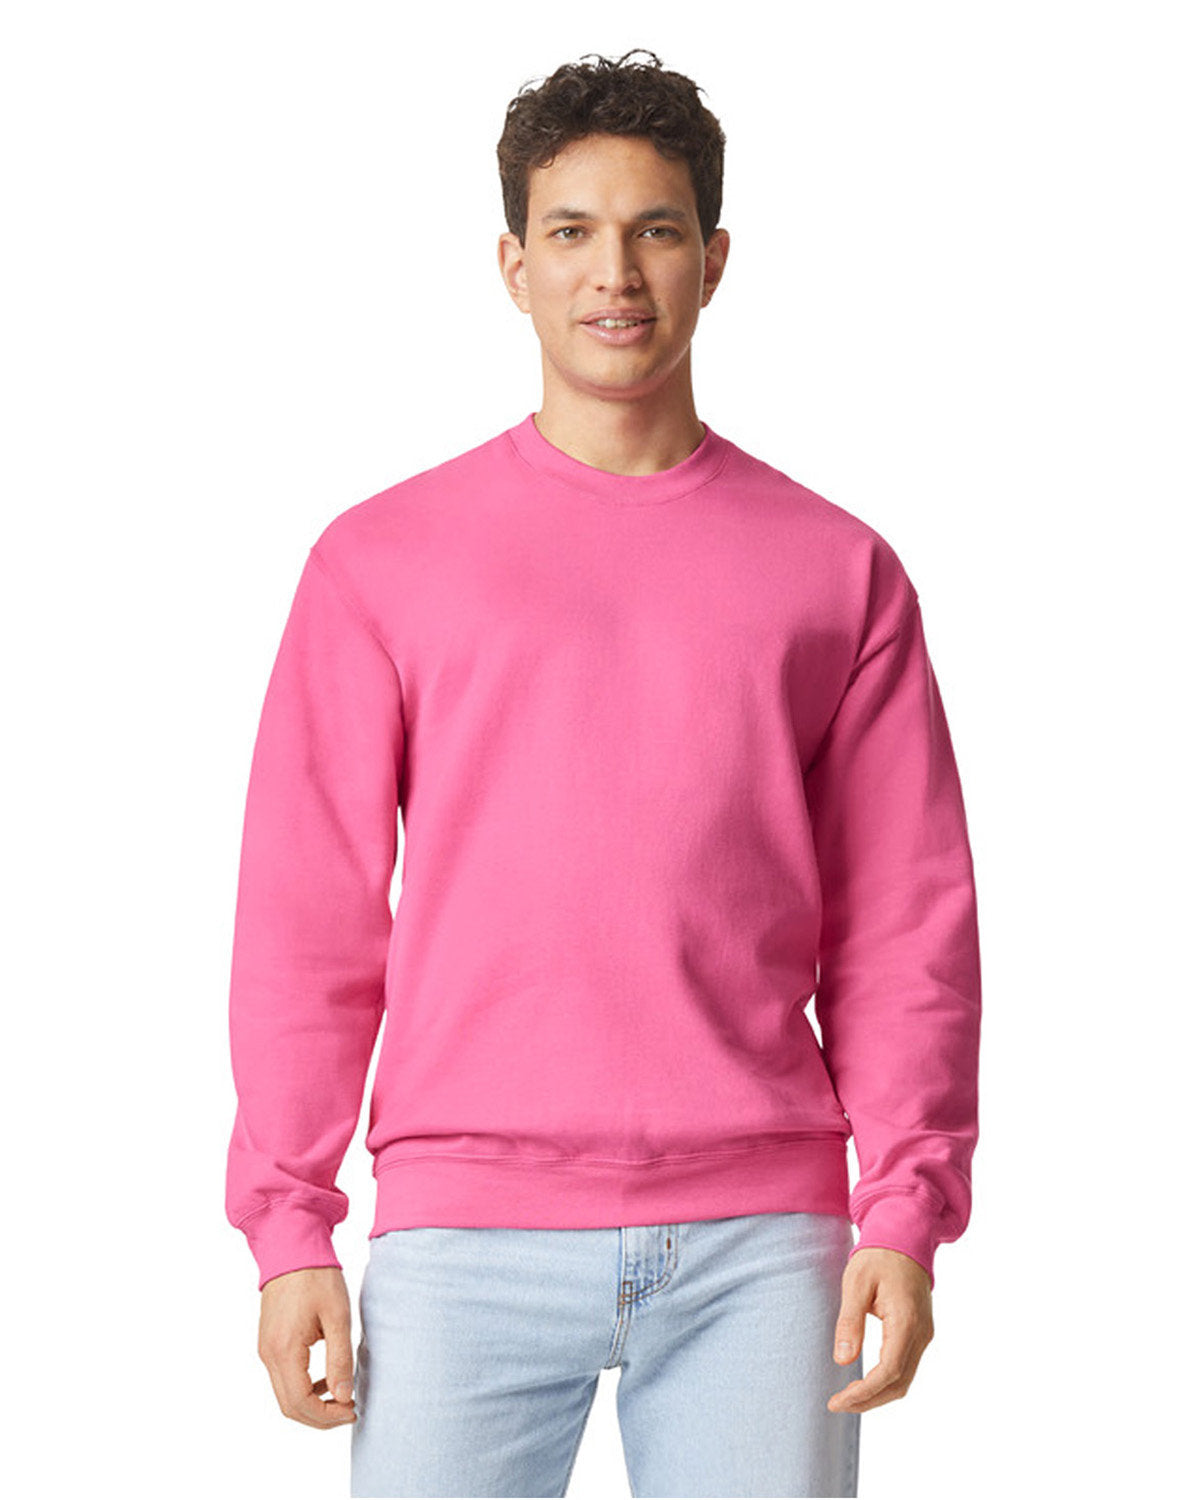 LE Custom Embroidered Kansas City Sweatshirts